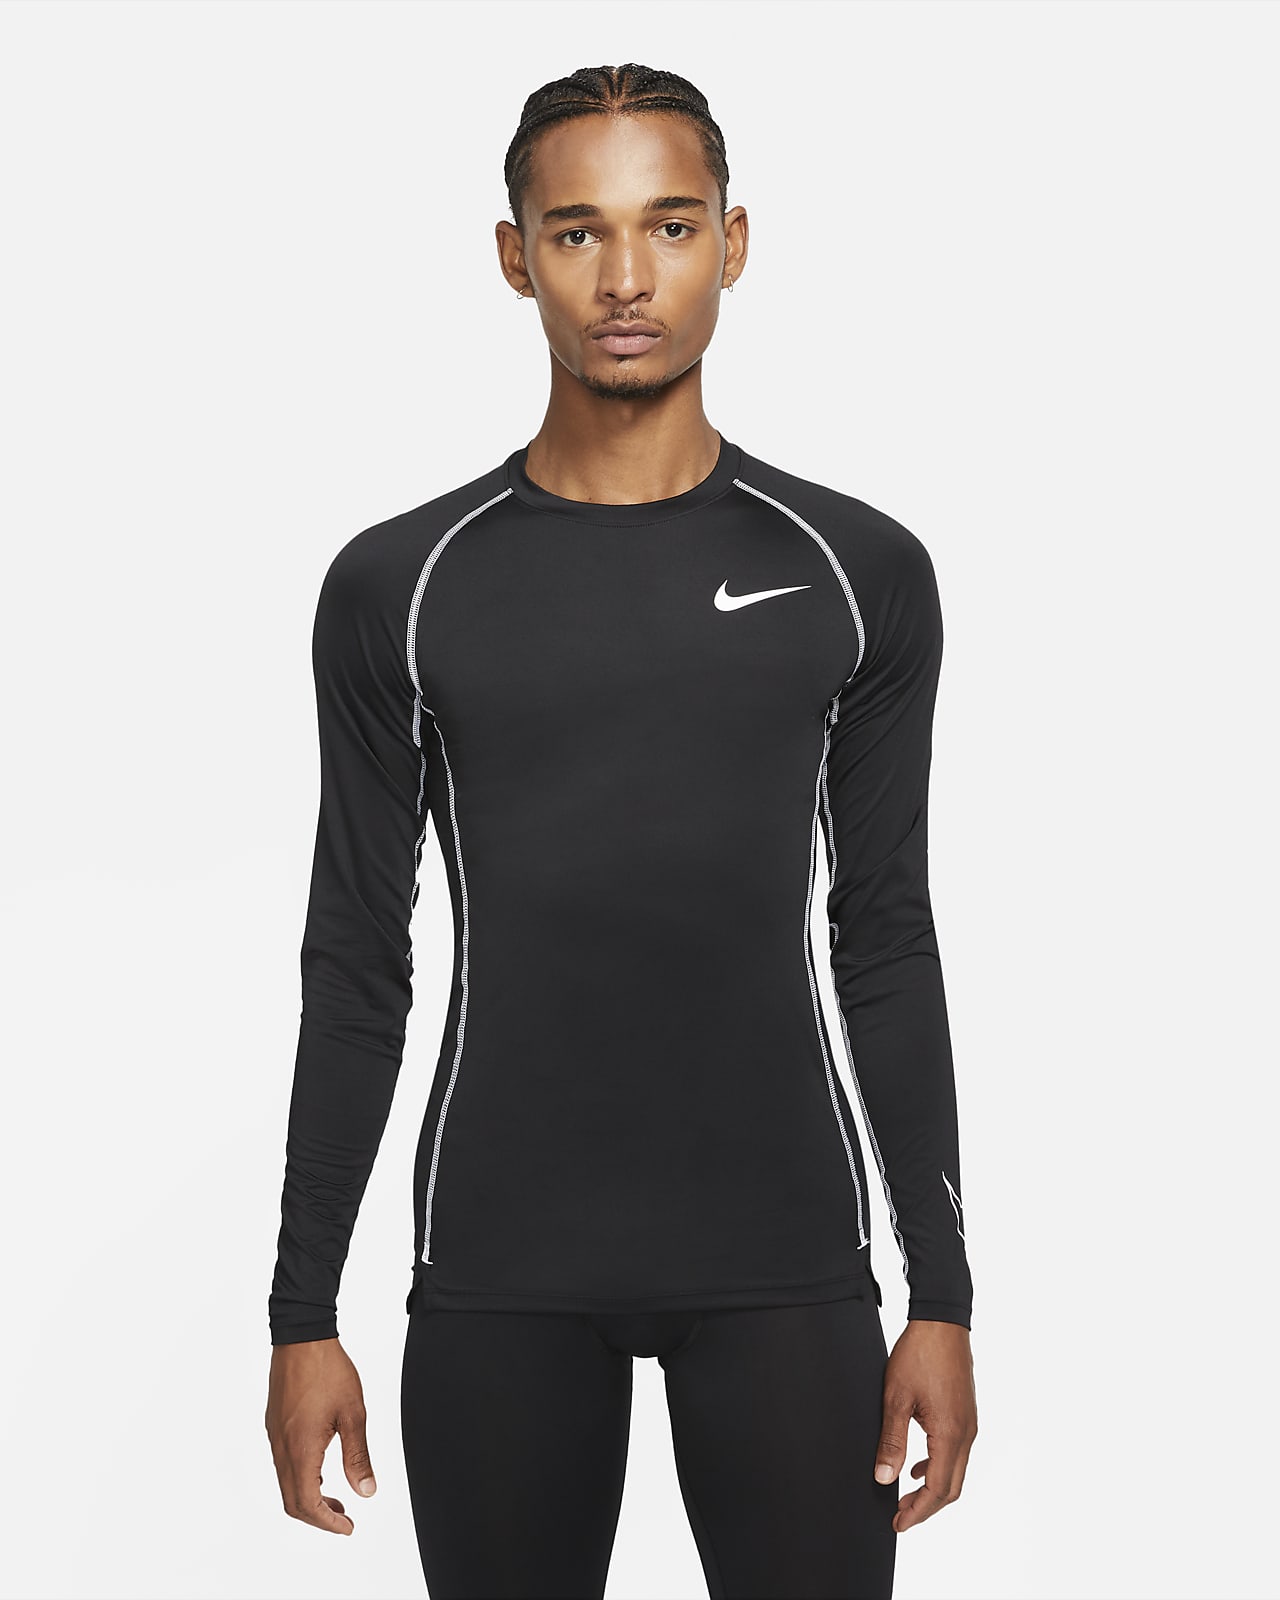 Nike Pro Men's Tight-Fit Long-Sleeve Top. Nike BG